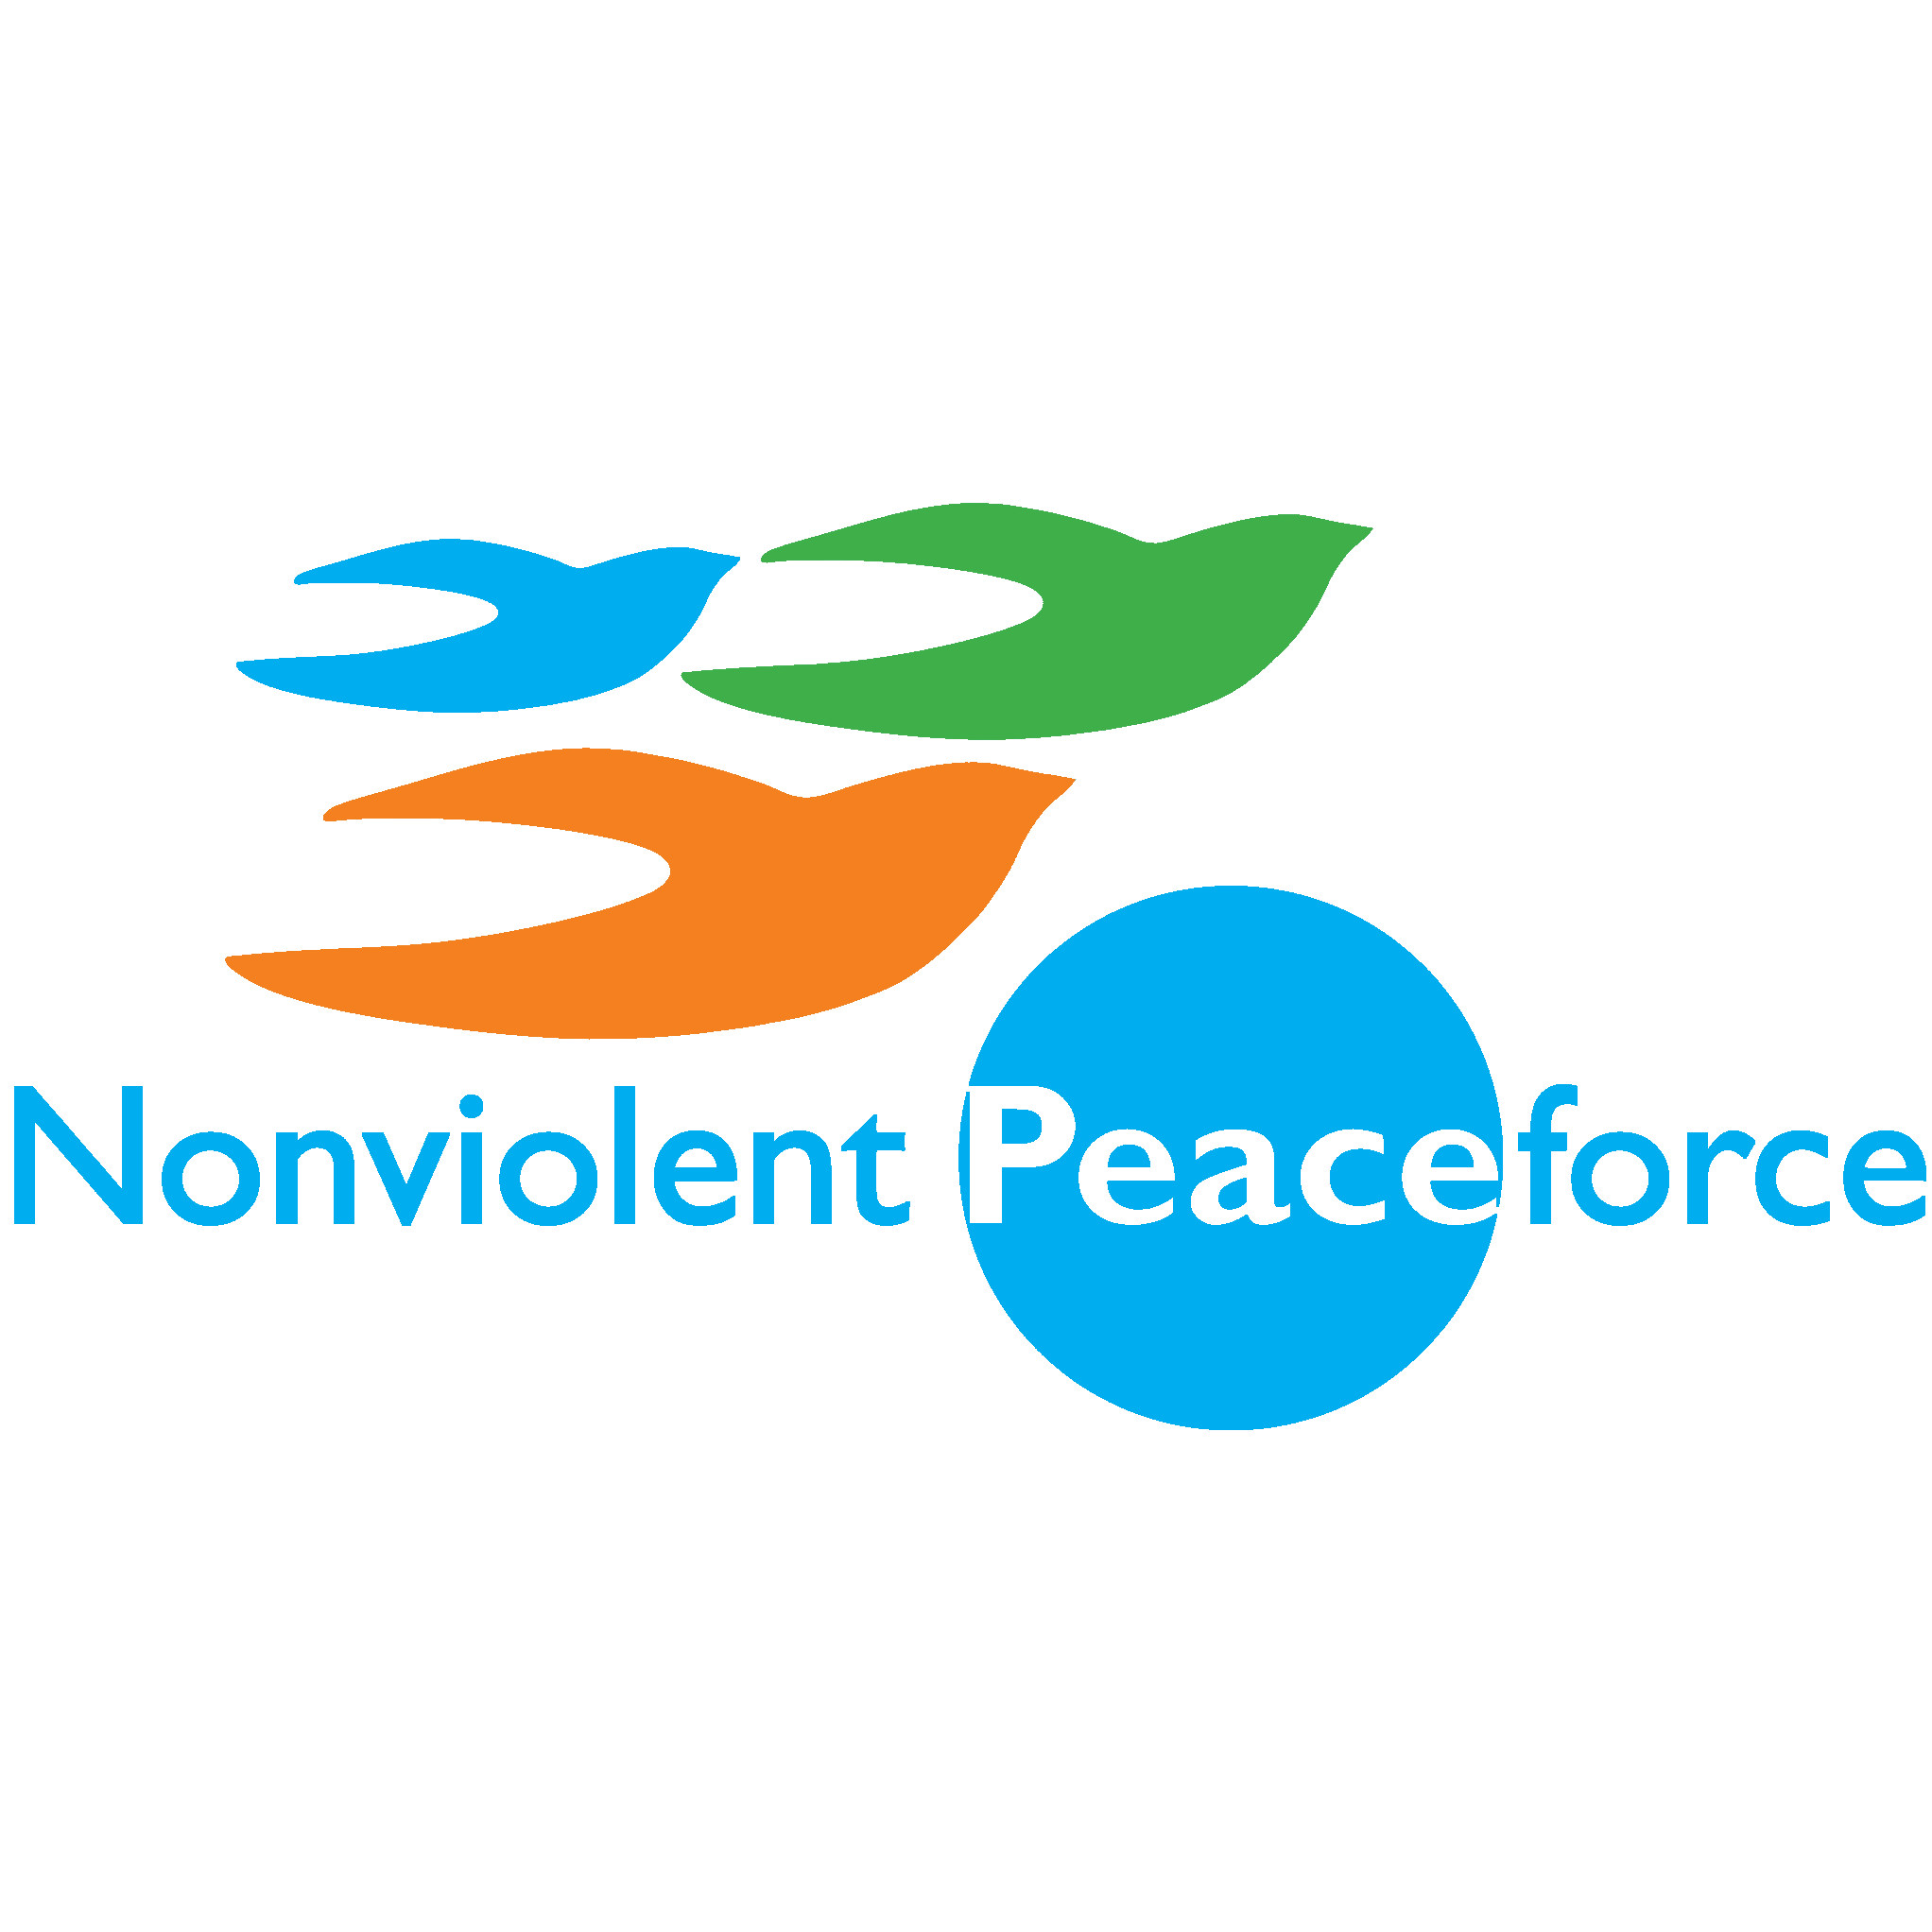 NP - Nonviolent Peaceforce